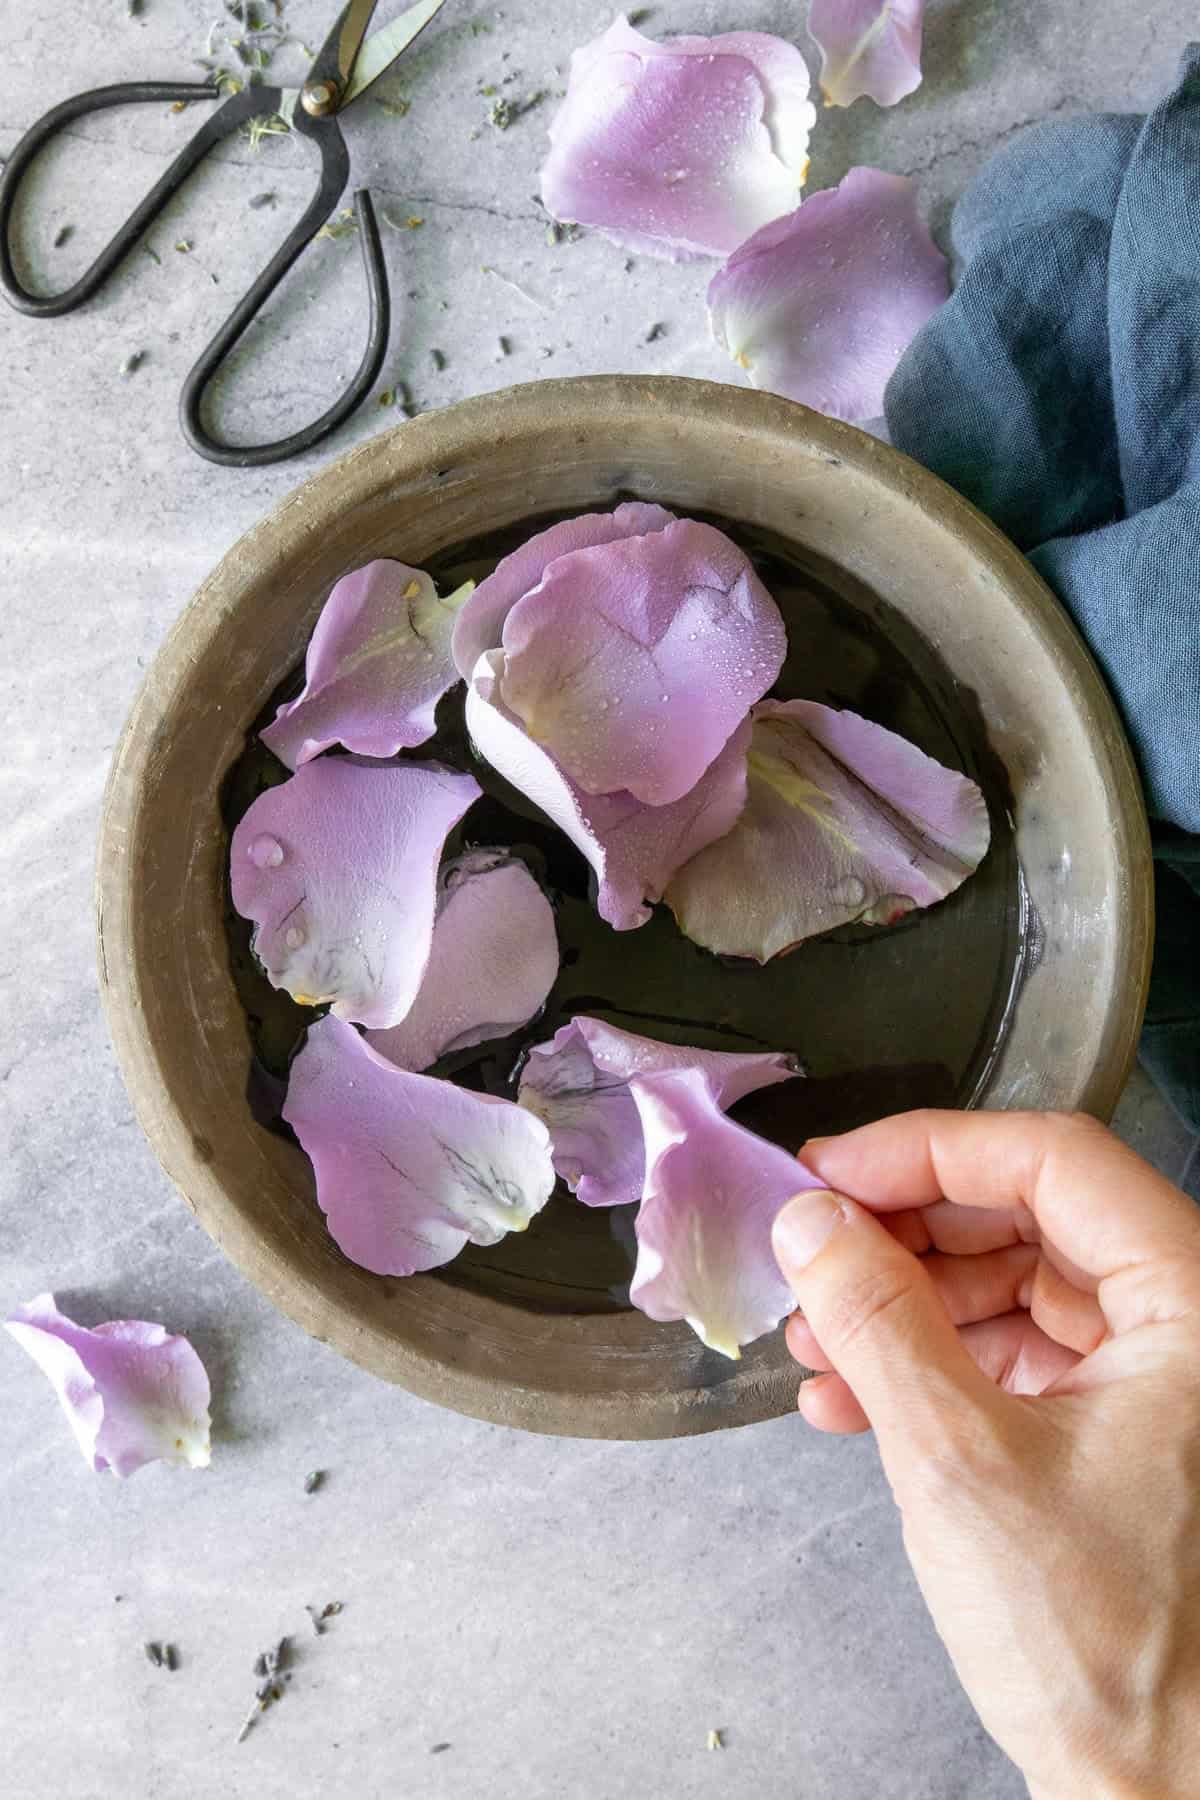 Rinse + Dry Fresh Rose Petals for diy rose perfume